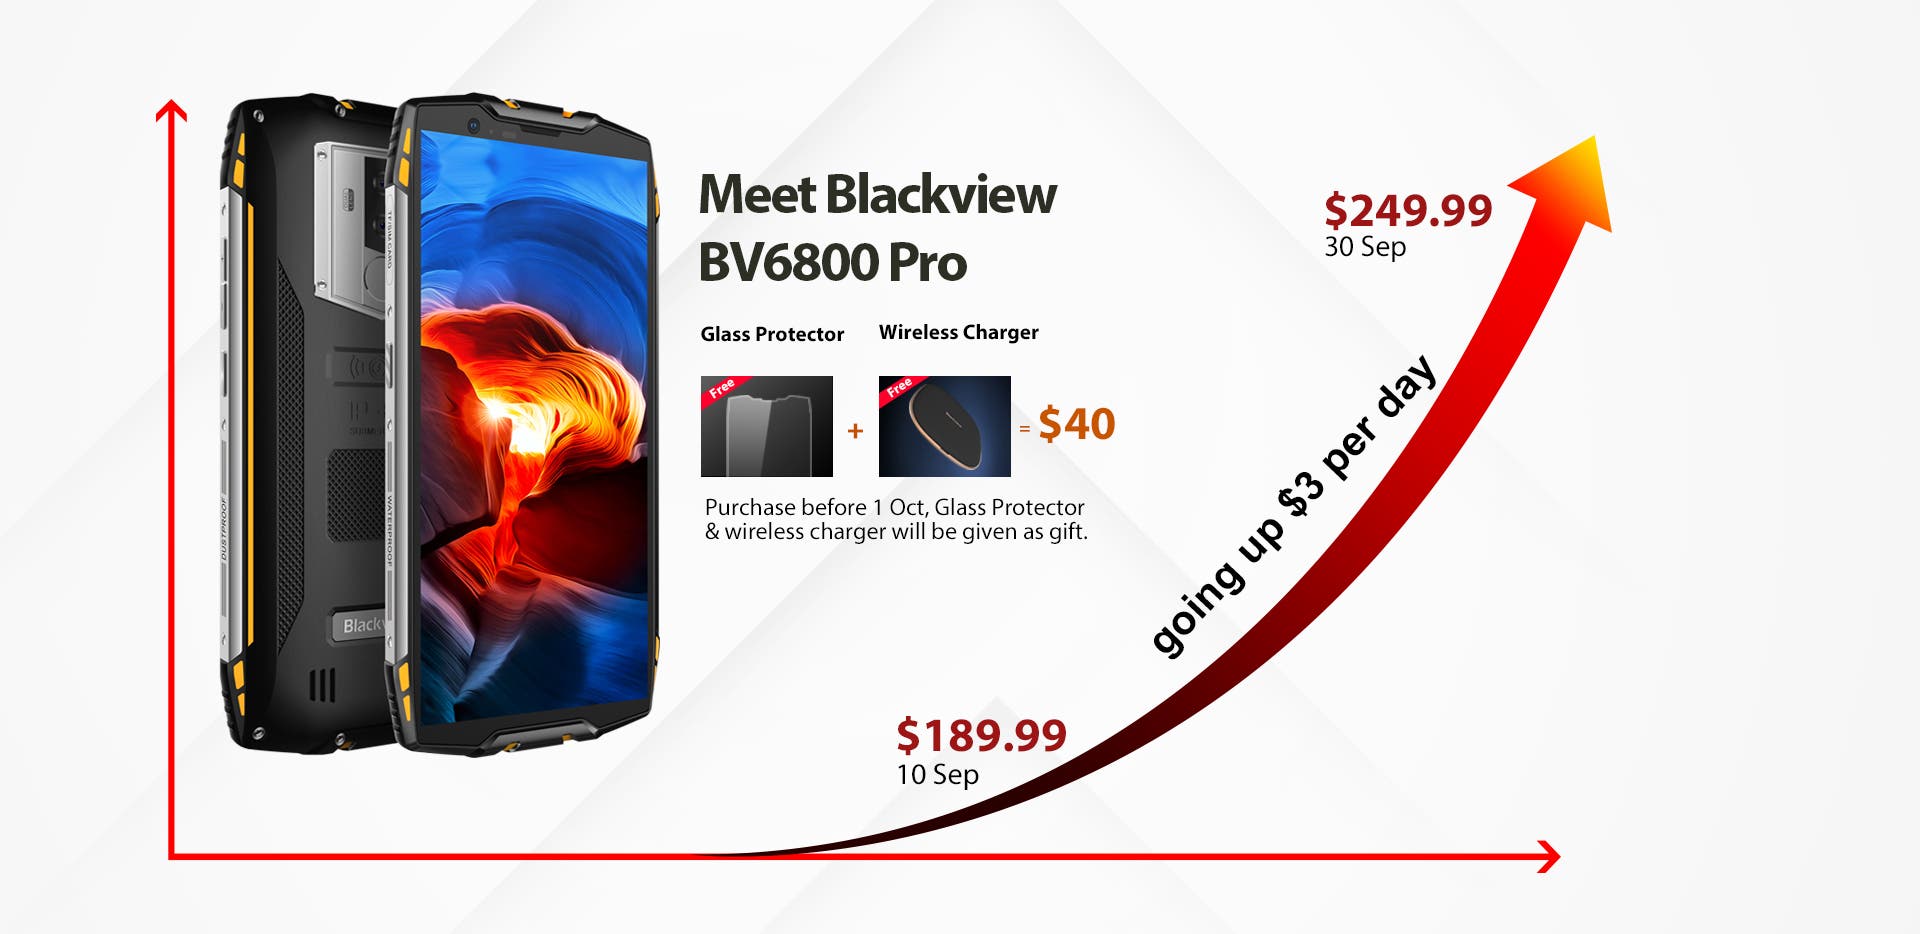 Blackview BV6800 Pro